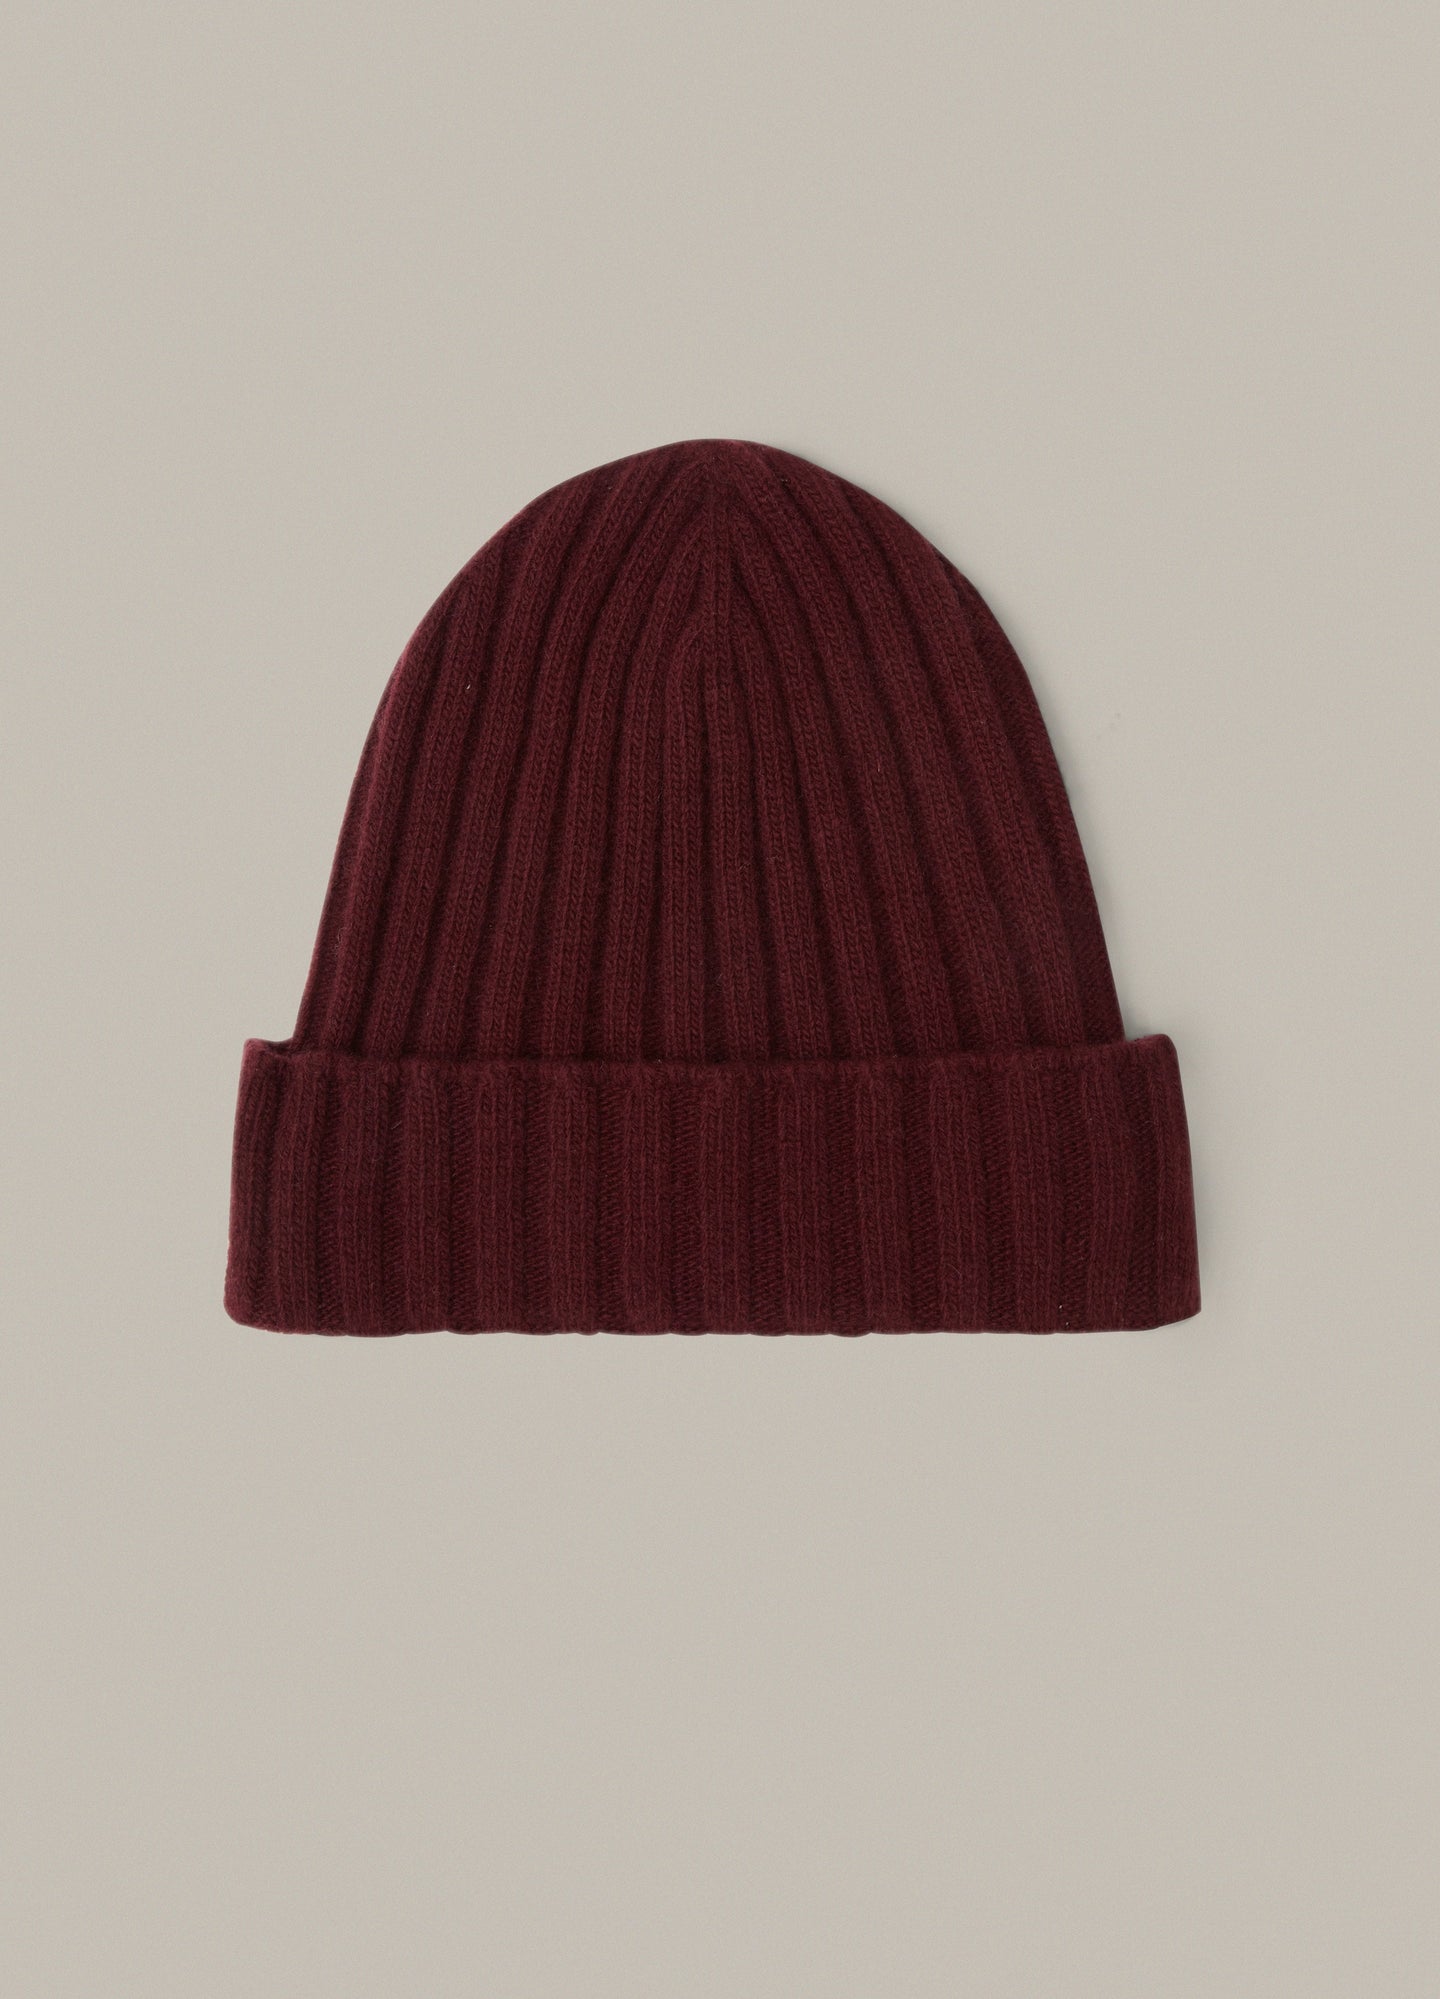 Merino/Cashmere Knit Hat - Dark Red Berg & Berg